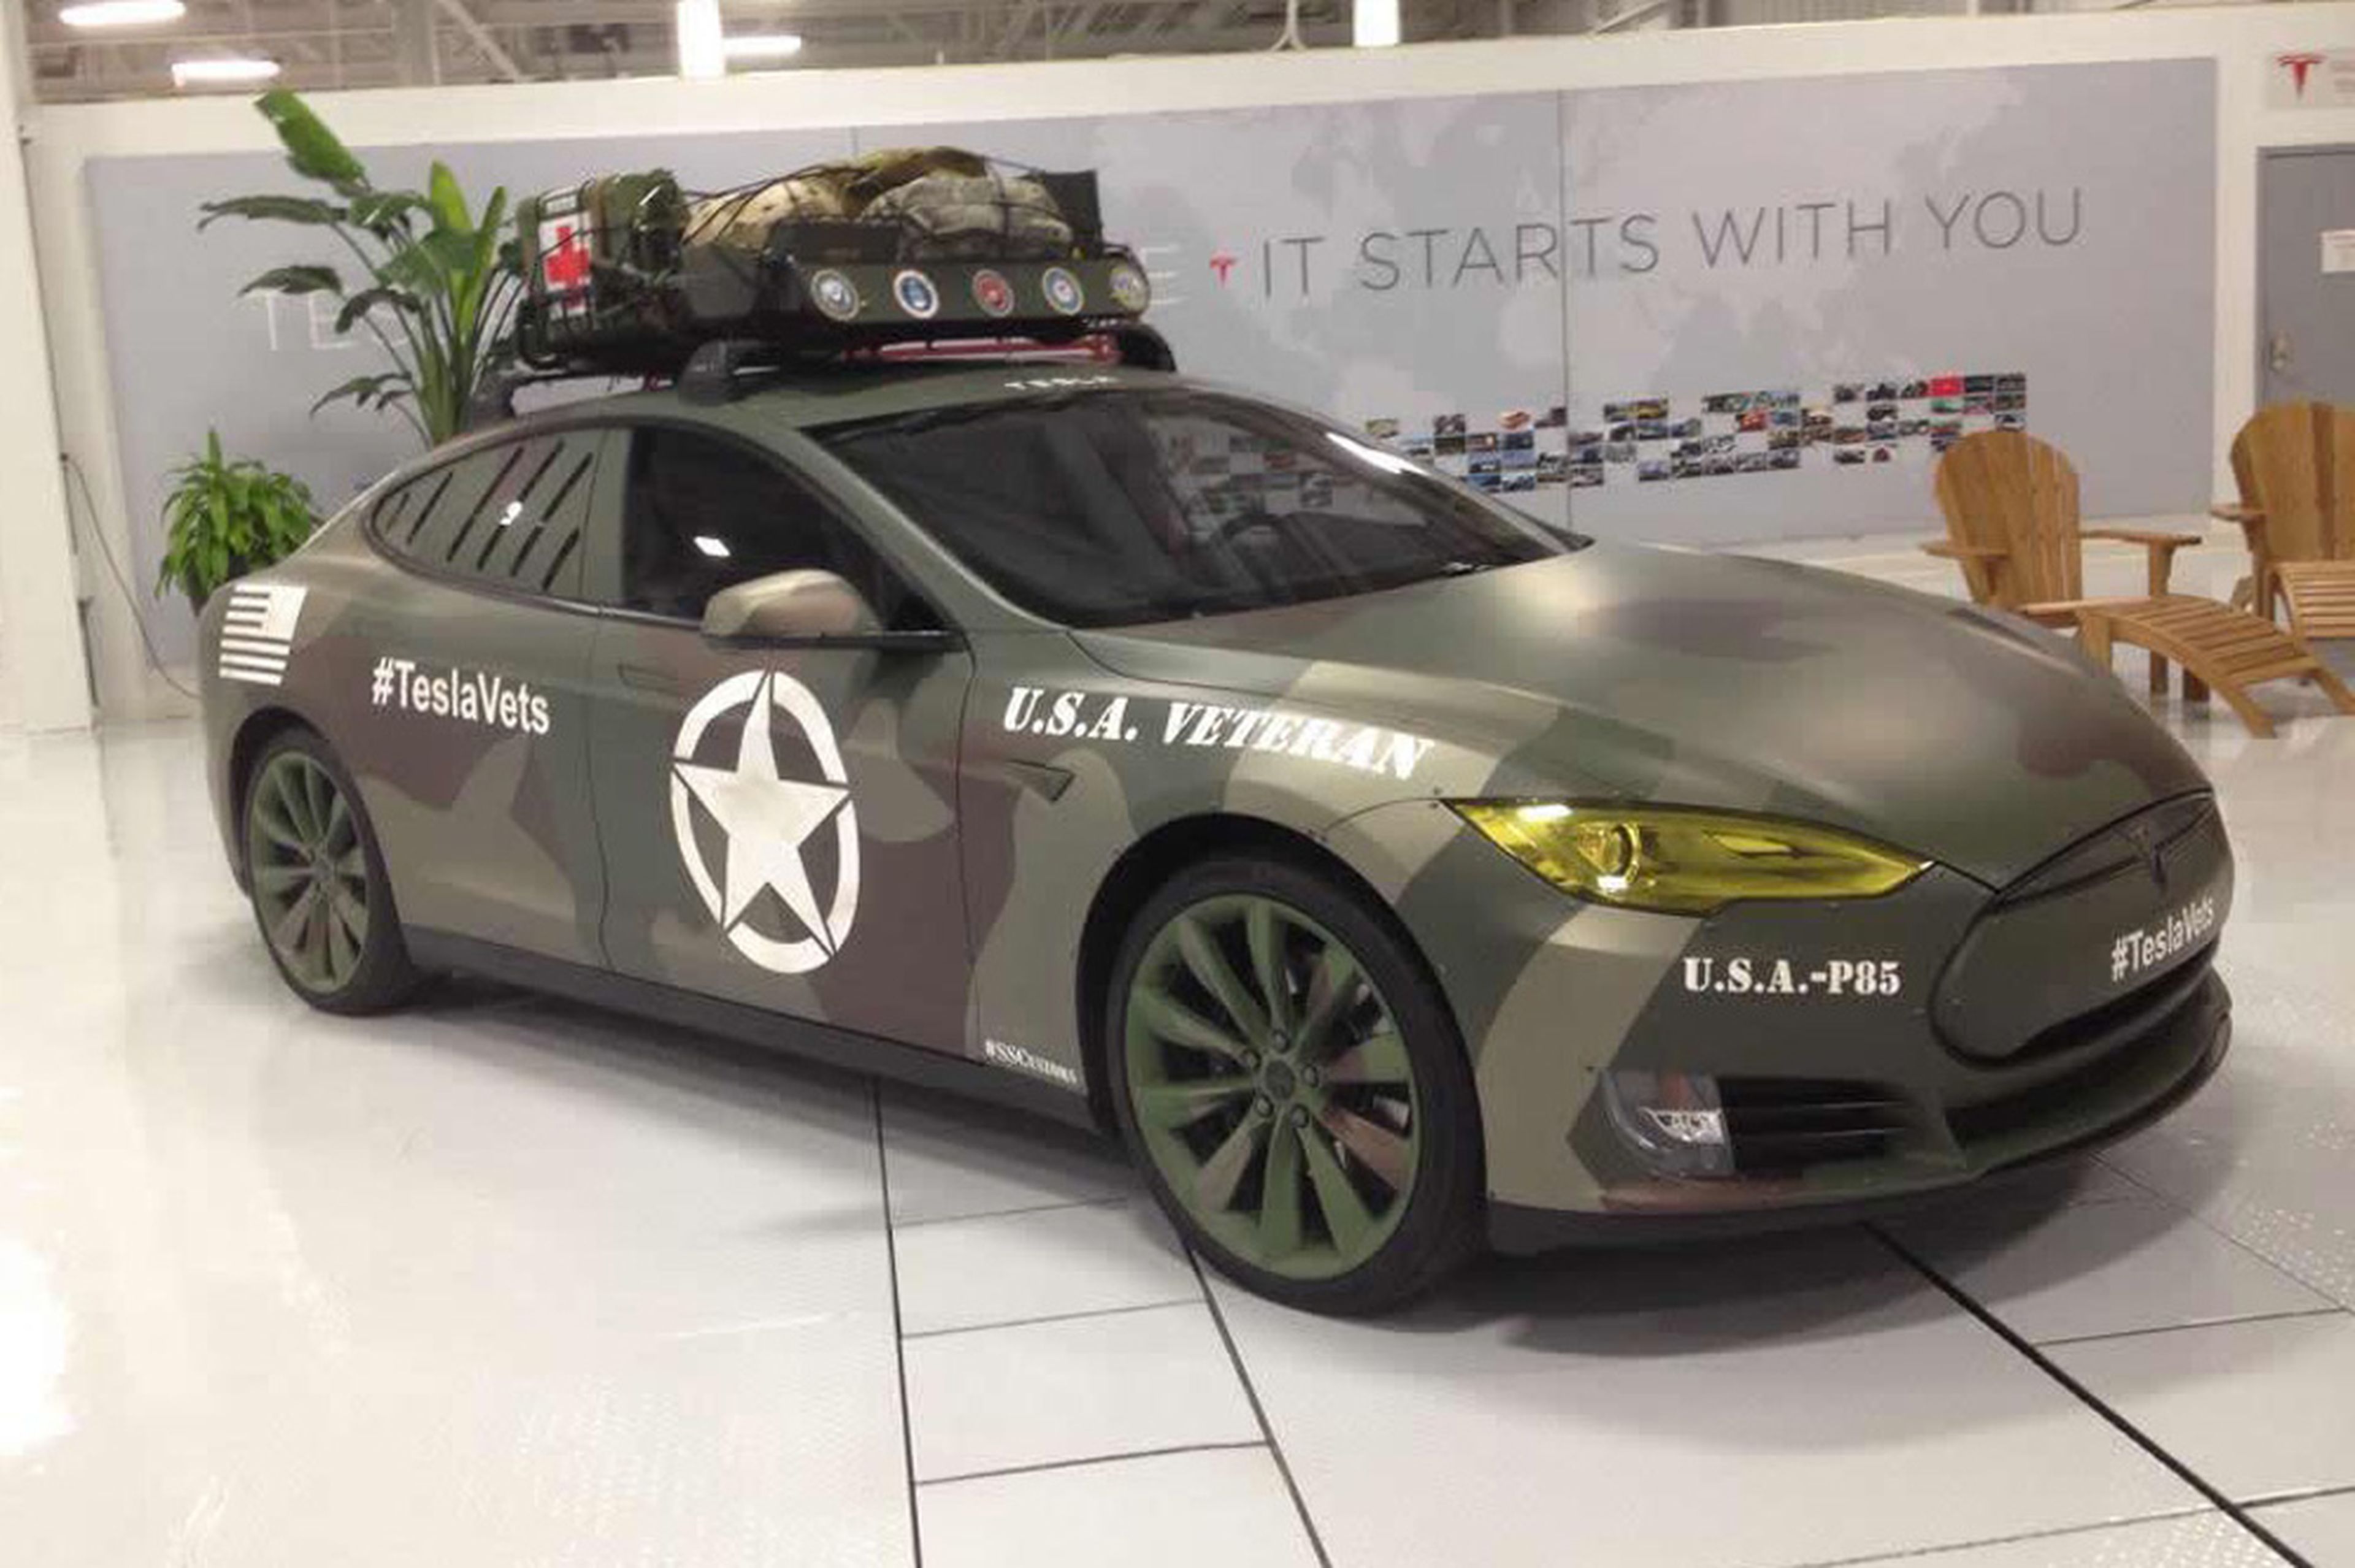 Un Tesla Model S para los veteranos de guerra americanos